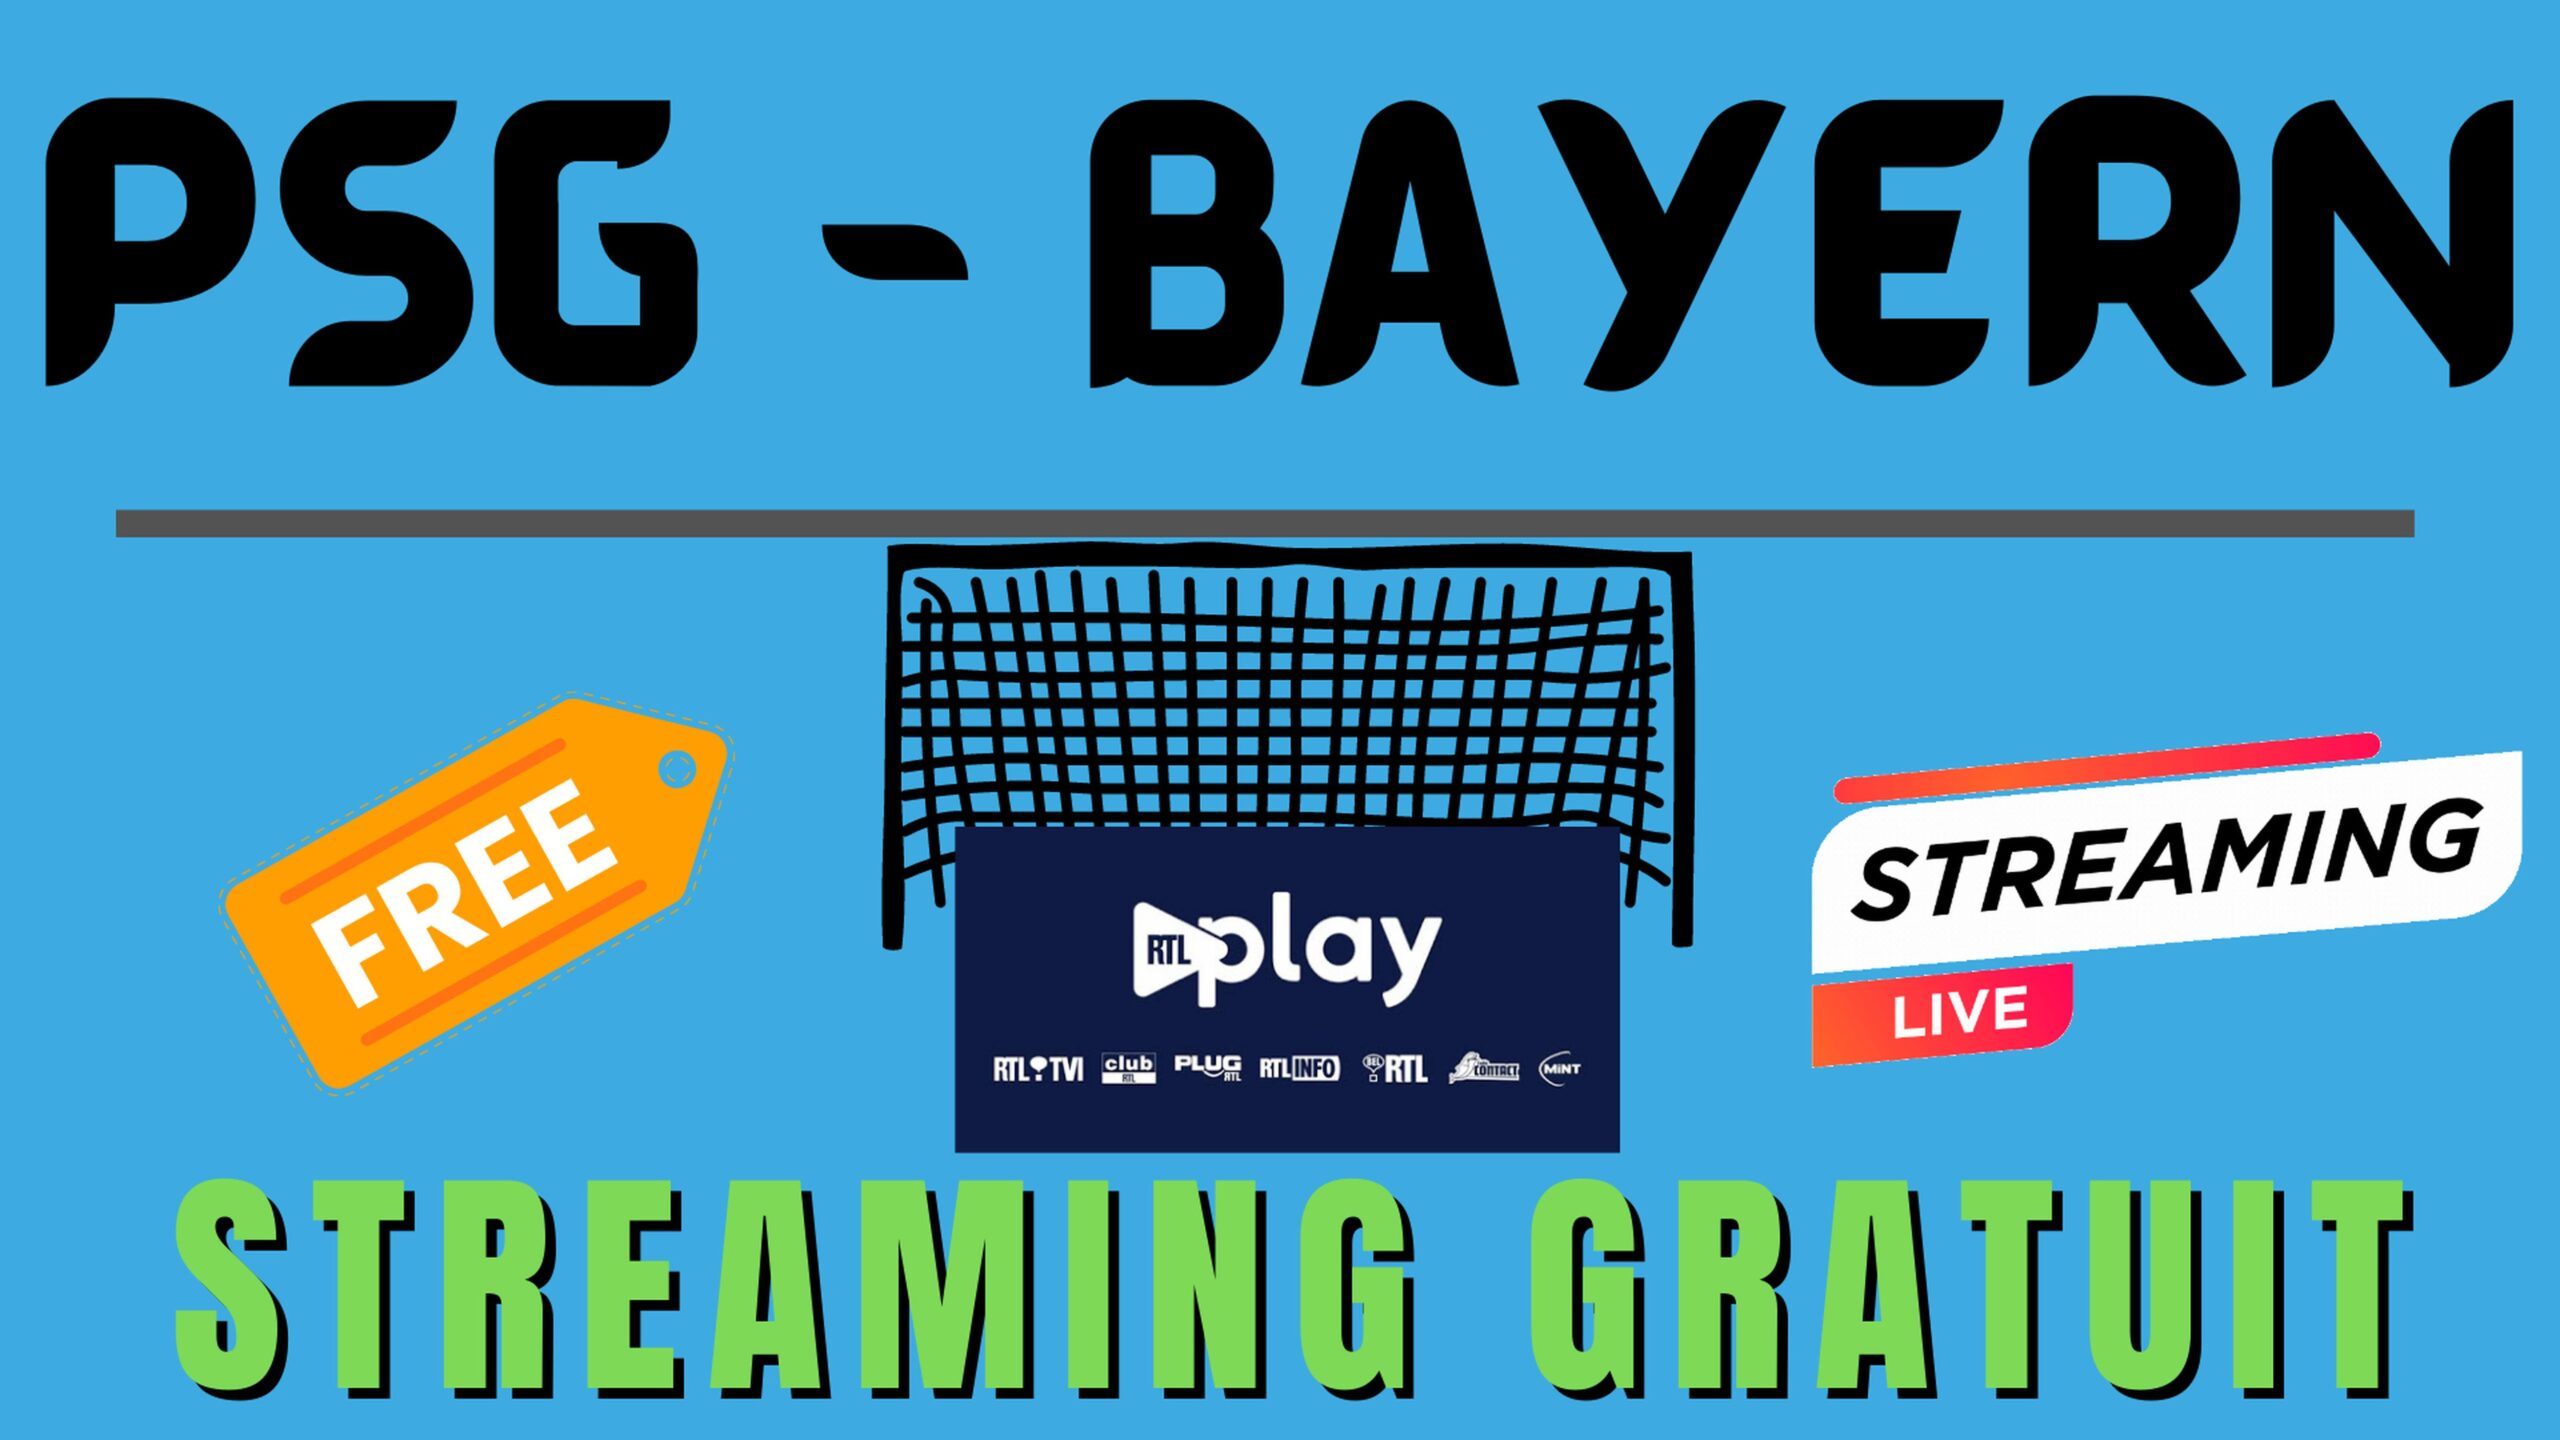 PSG Bayern – Streaming gratuit (chaîne étrangère)